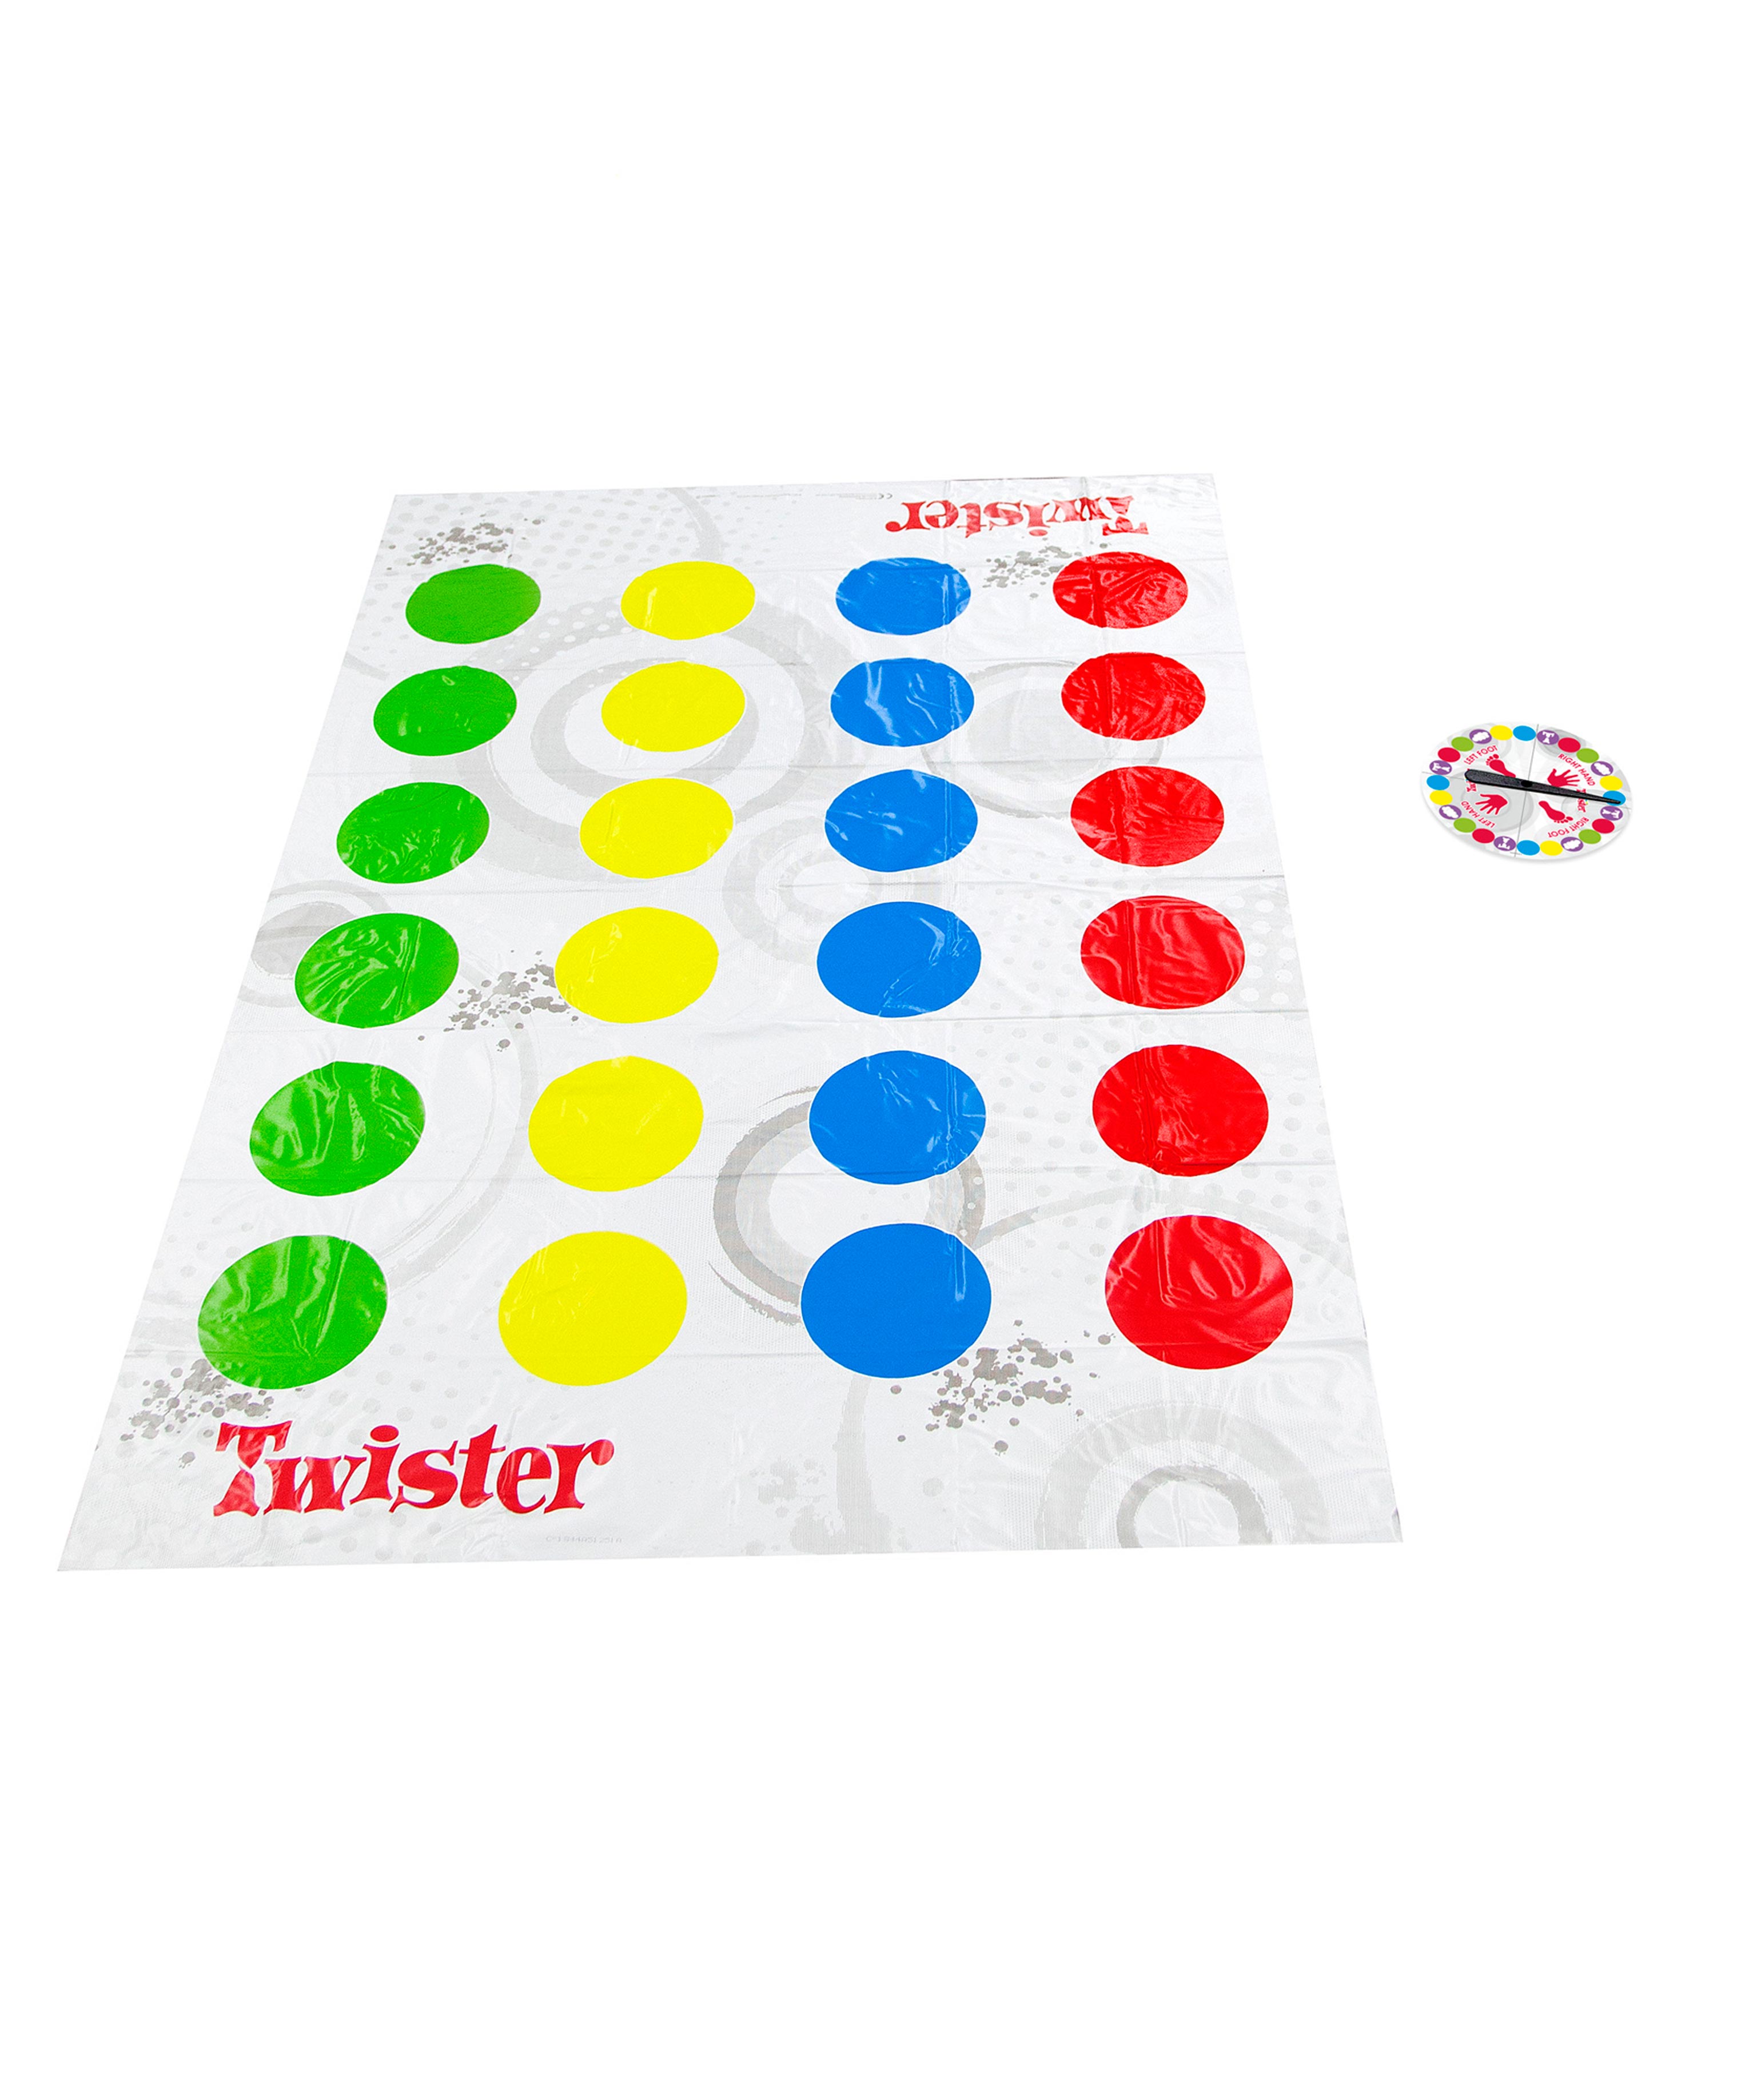 ''Twister'' - Fun game